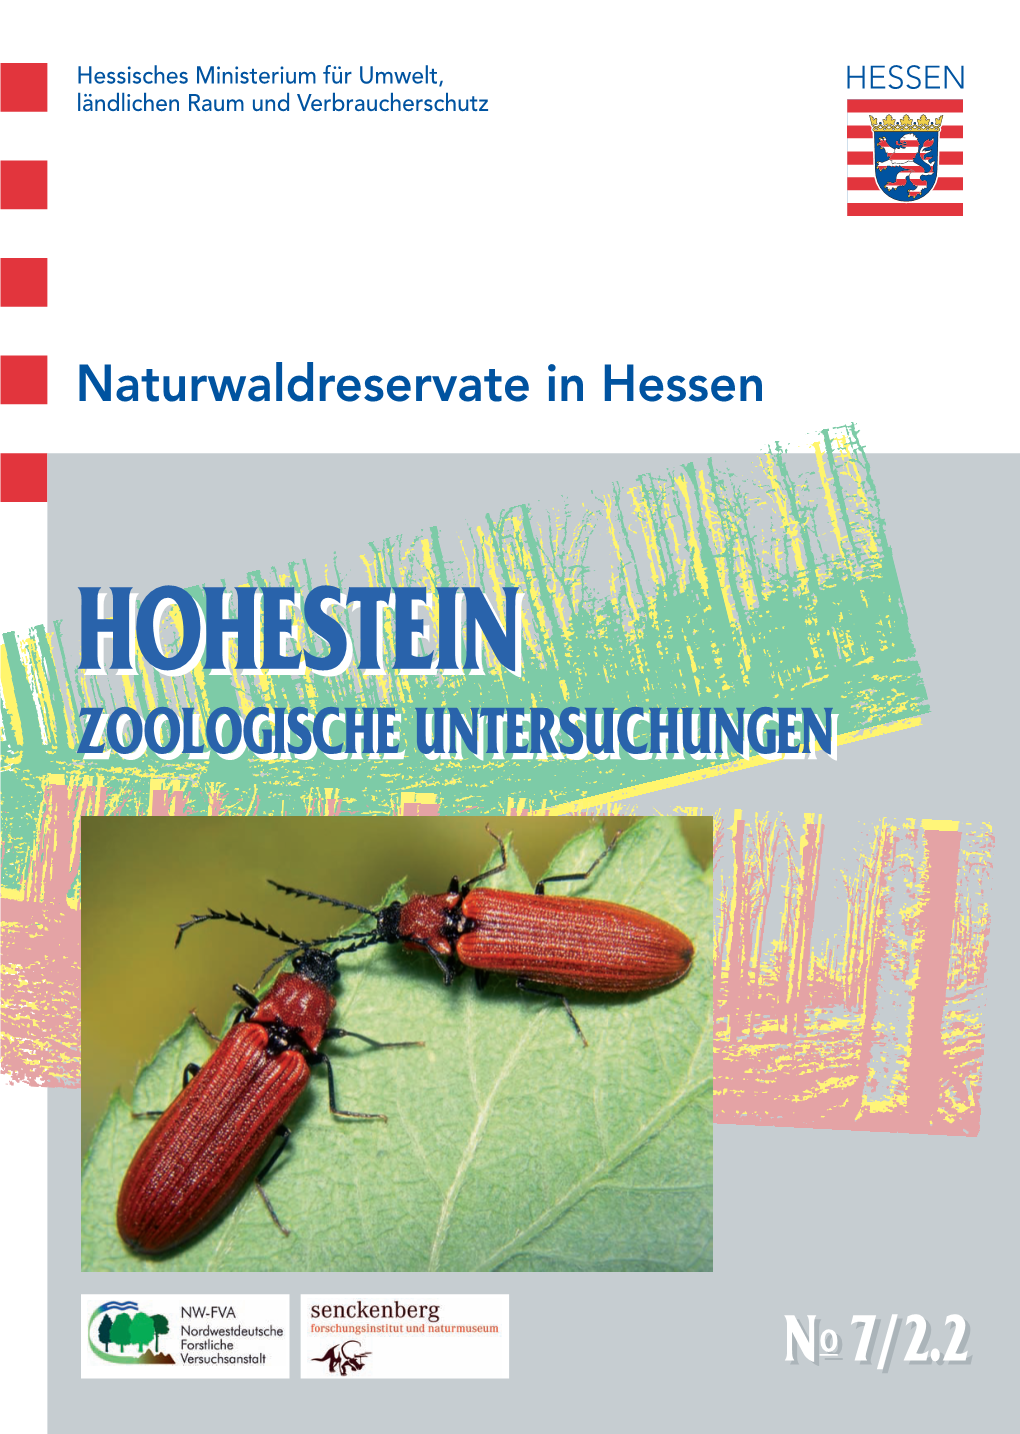 Hohestein – Zoologische Untersuchungen 1994-1996, Teil 2